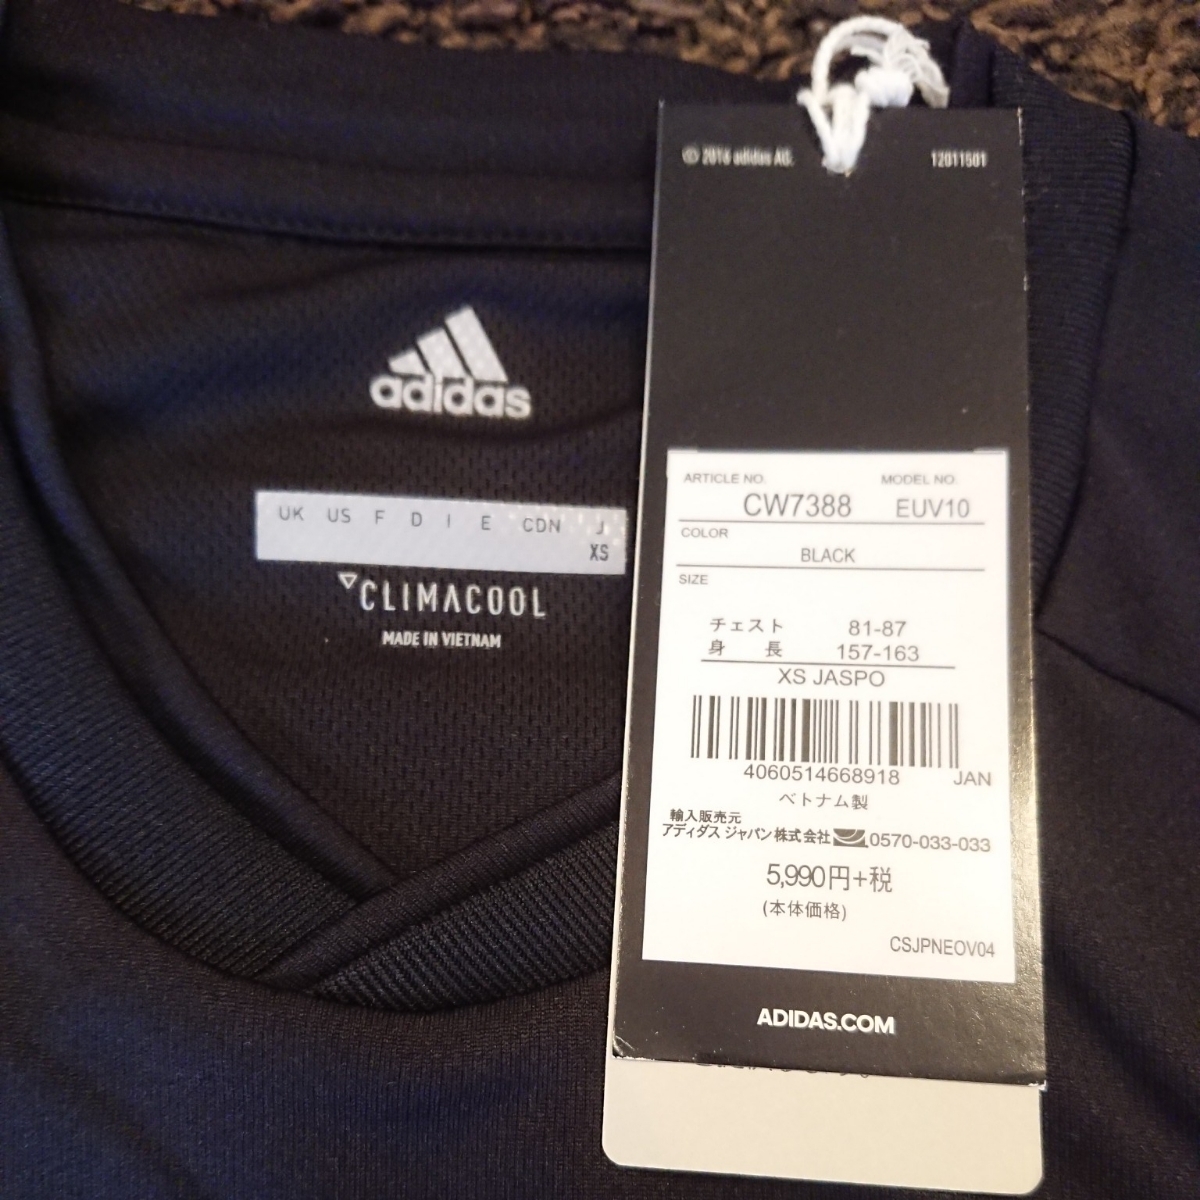  обычная цена 6,469 иен adidas Adidas ULT тренировка джерси -CLIMACOOL новый товар CW7388klaima прохладный размер XS чёрный черный футболка 